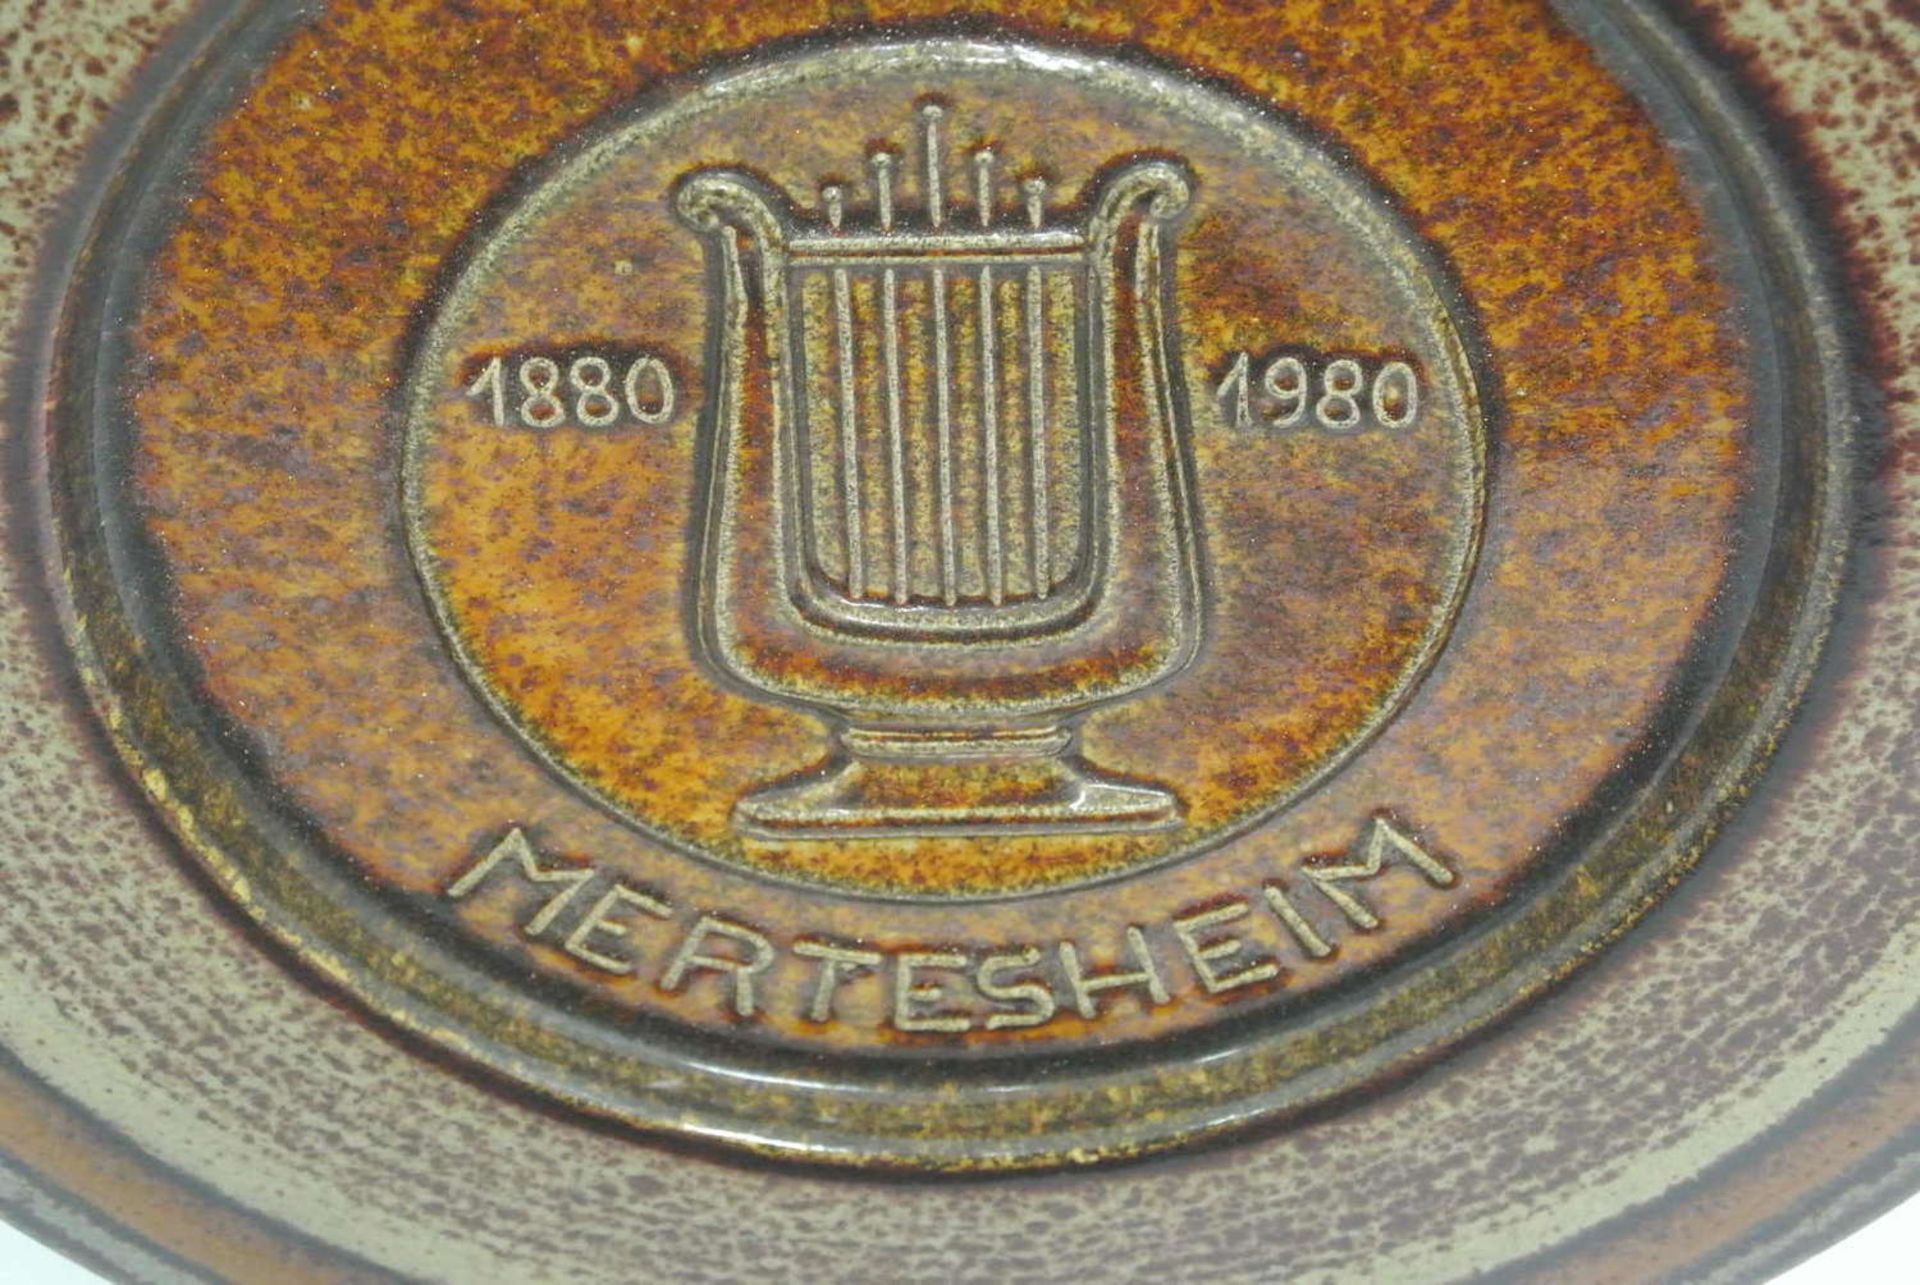 1 Studio-Keramik von Gehrig "100 Jahre Sängerverein Mertesheim 1880 - 1980" mit Signatur 1 studio - Bild 2 aus 2